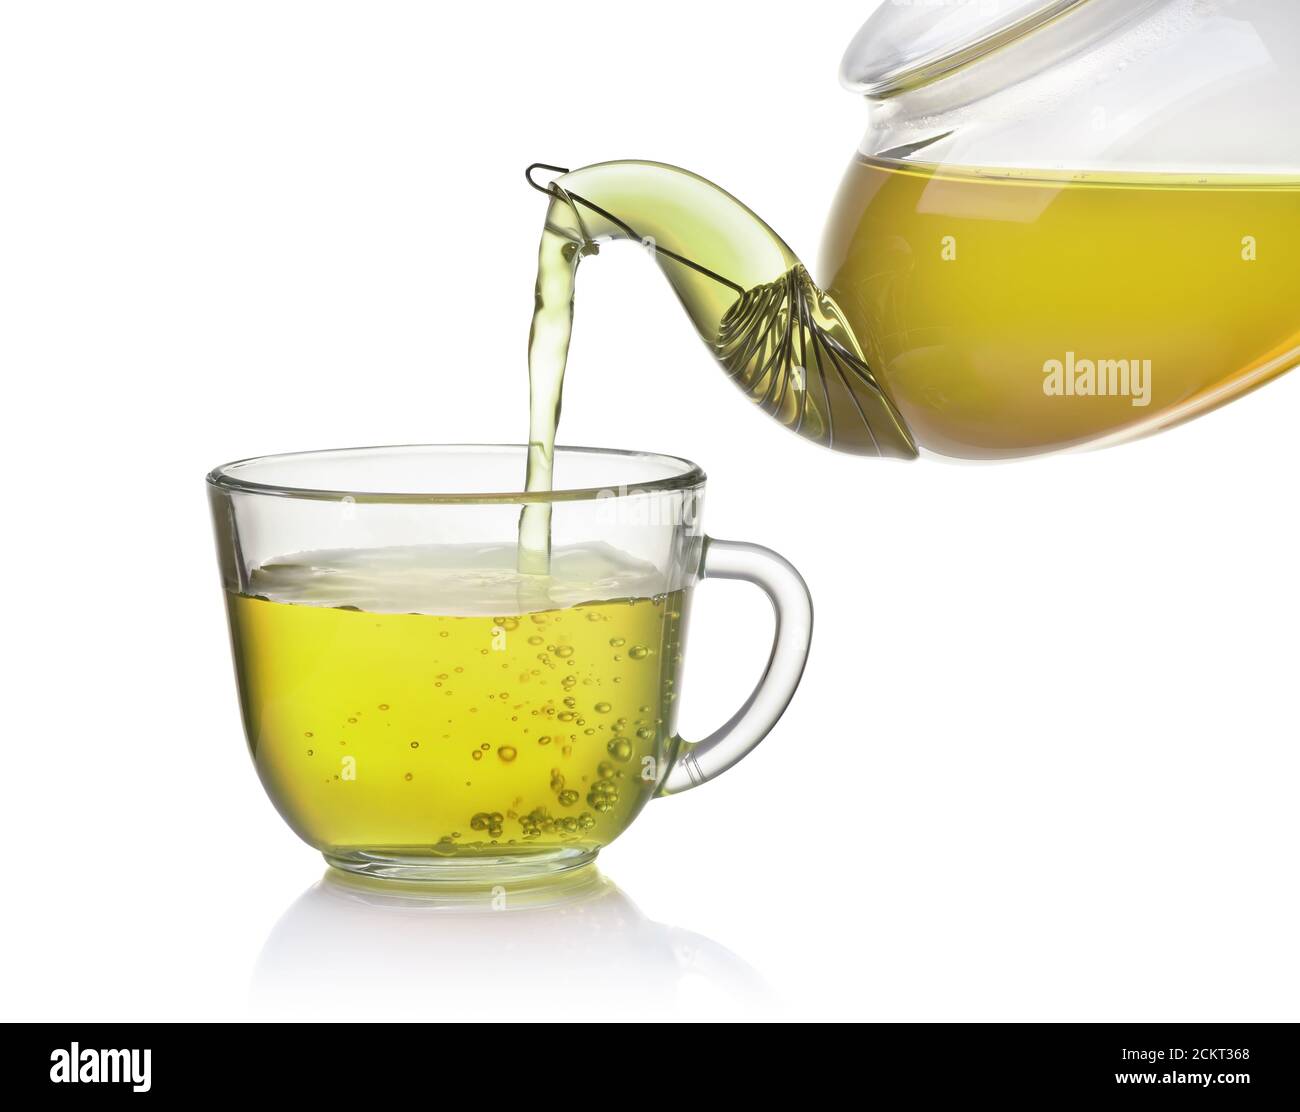 Le thé coule de la théière dans une tasse en verre isolée en blanc Banque D'Images